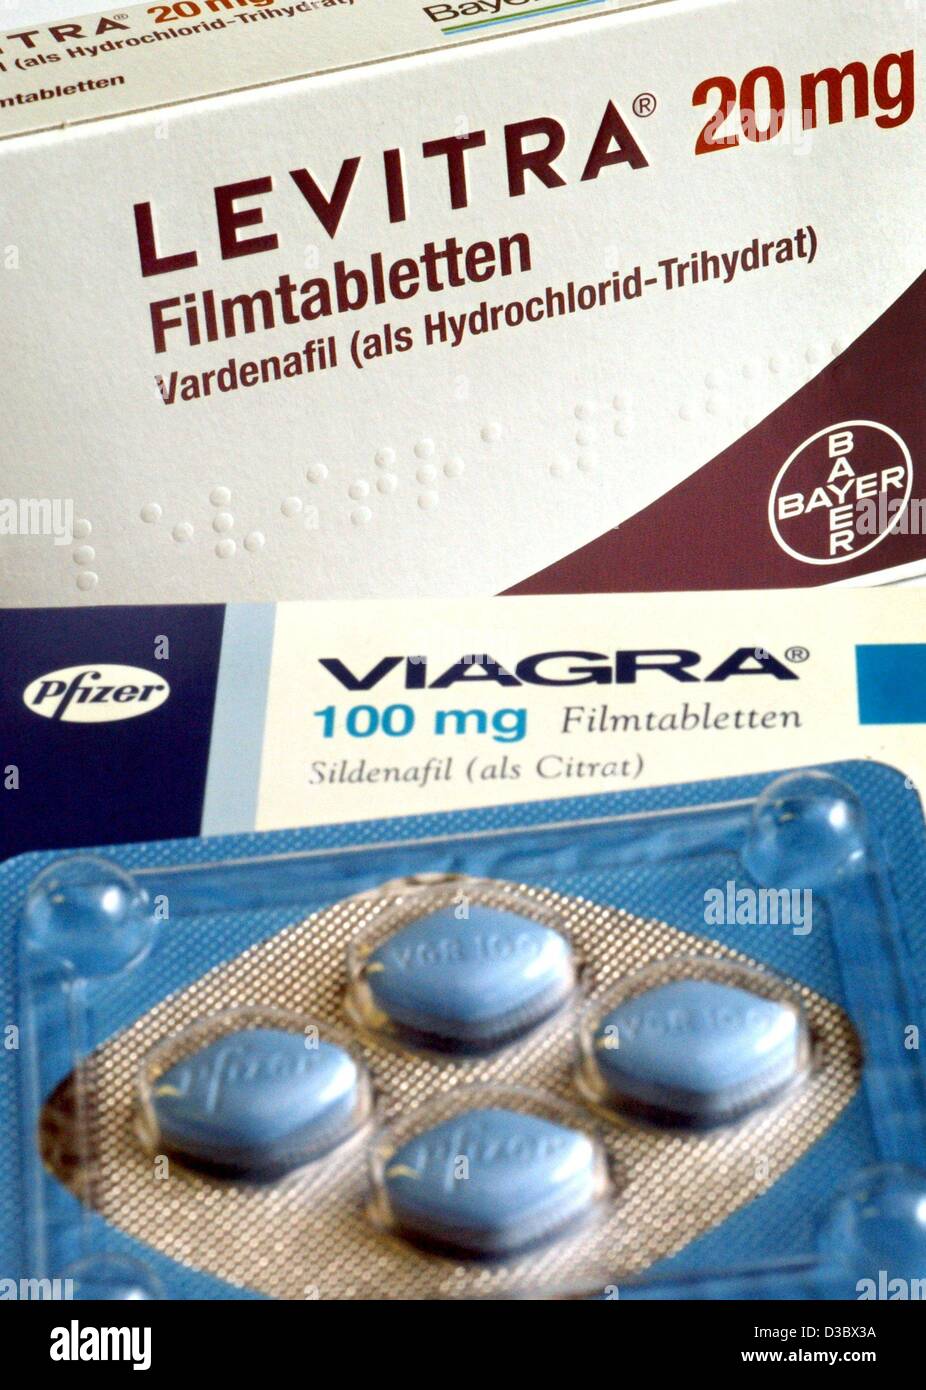 Dpa) - ein Paket von der Anti-Impotenz Pillen Levitra, hergestellt von der  deutschen chemischen und Pharmakonzern Bayer, liegt hinter einem Paket von  Viagra-Pillen (vorne), fotografiert in Düsseldorf, Deutschland, 21. August  2003. Die